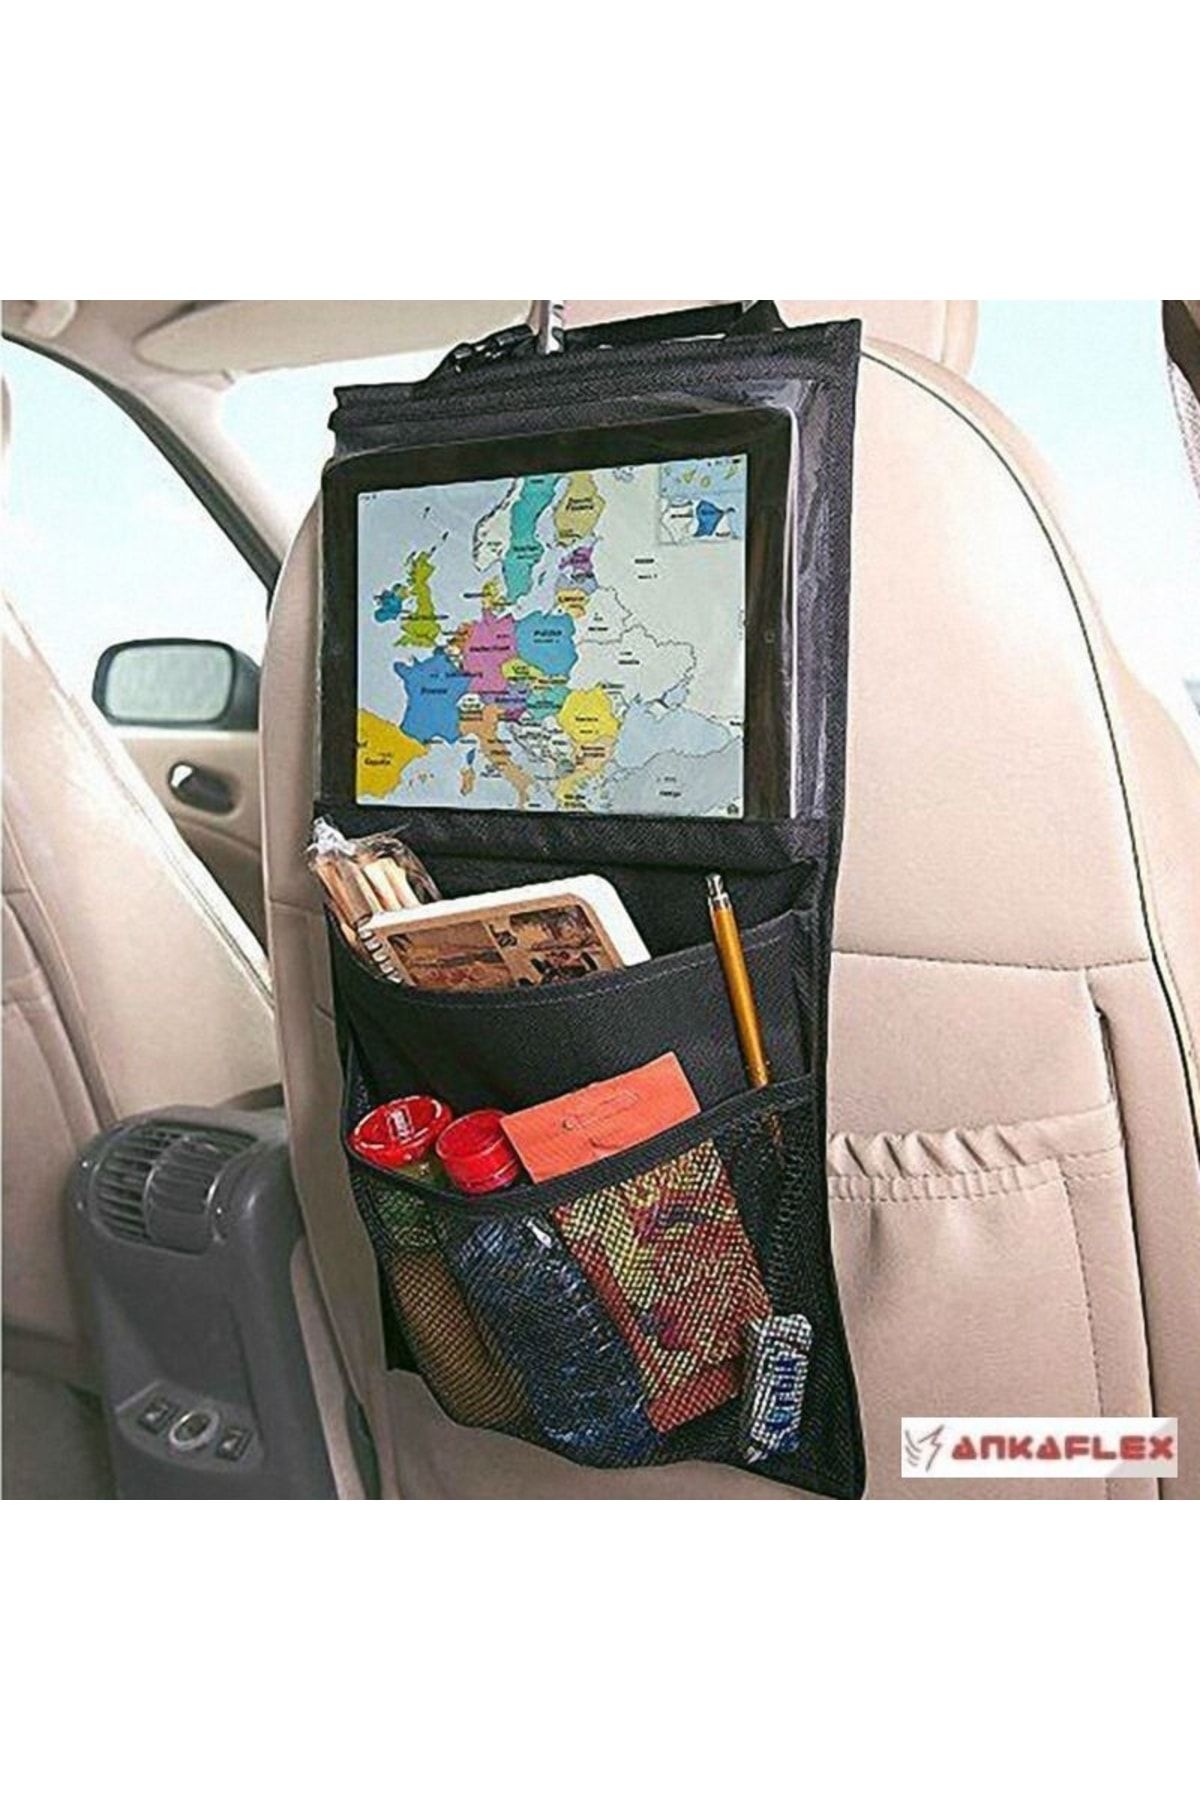 Ankaflex 2 Adet Araba Koltuk Arkası Şeffaf Koruyucu Kılıf Tablet Tutucu Stand Araç Içi Düzenleyici Organizer